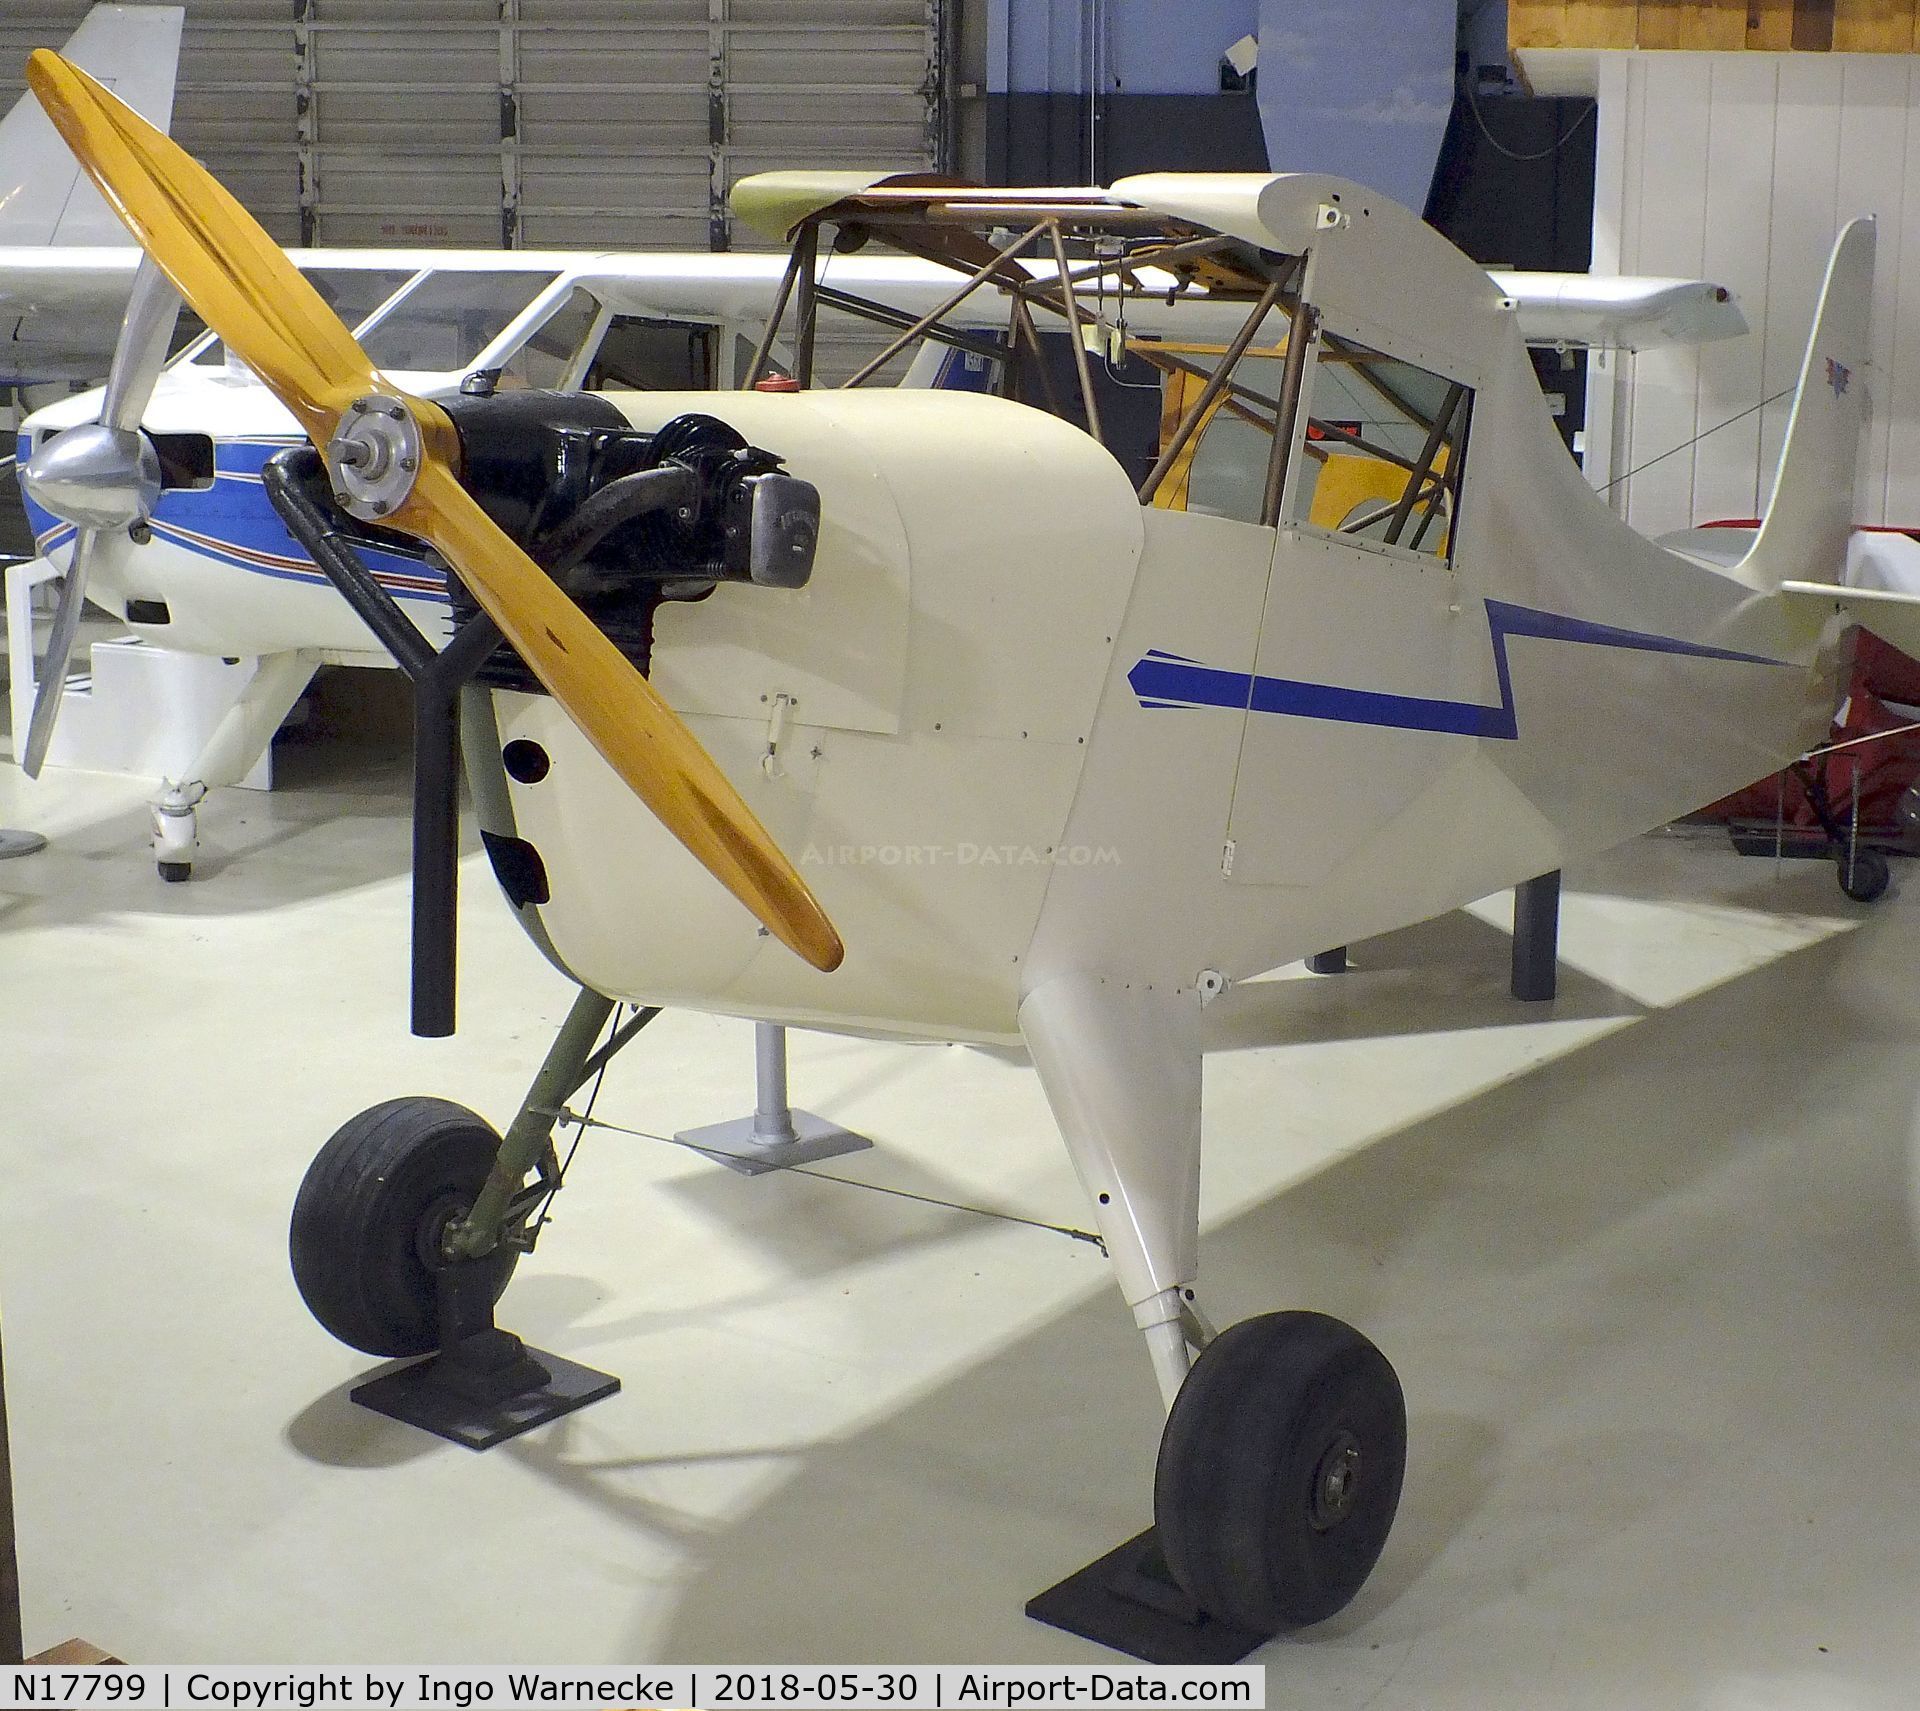 N17799, Aeronca K C/N K-66, Aeronca K 1 Scout (minus wings and starboard outer skin) at the Southern Museum of Flight, Birmingham AL